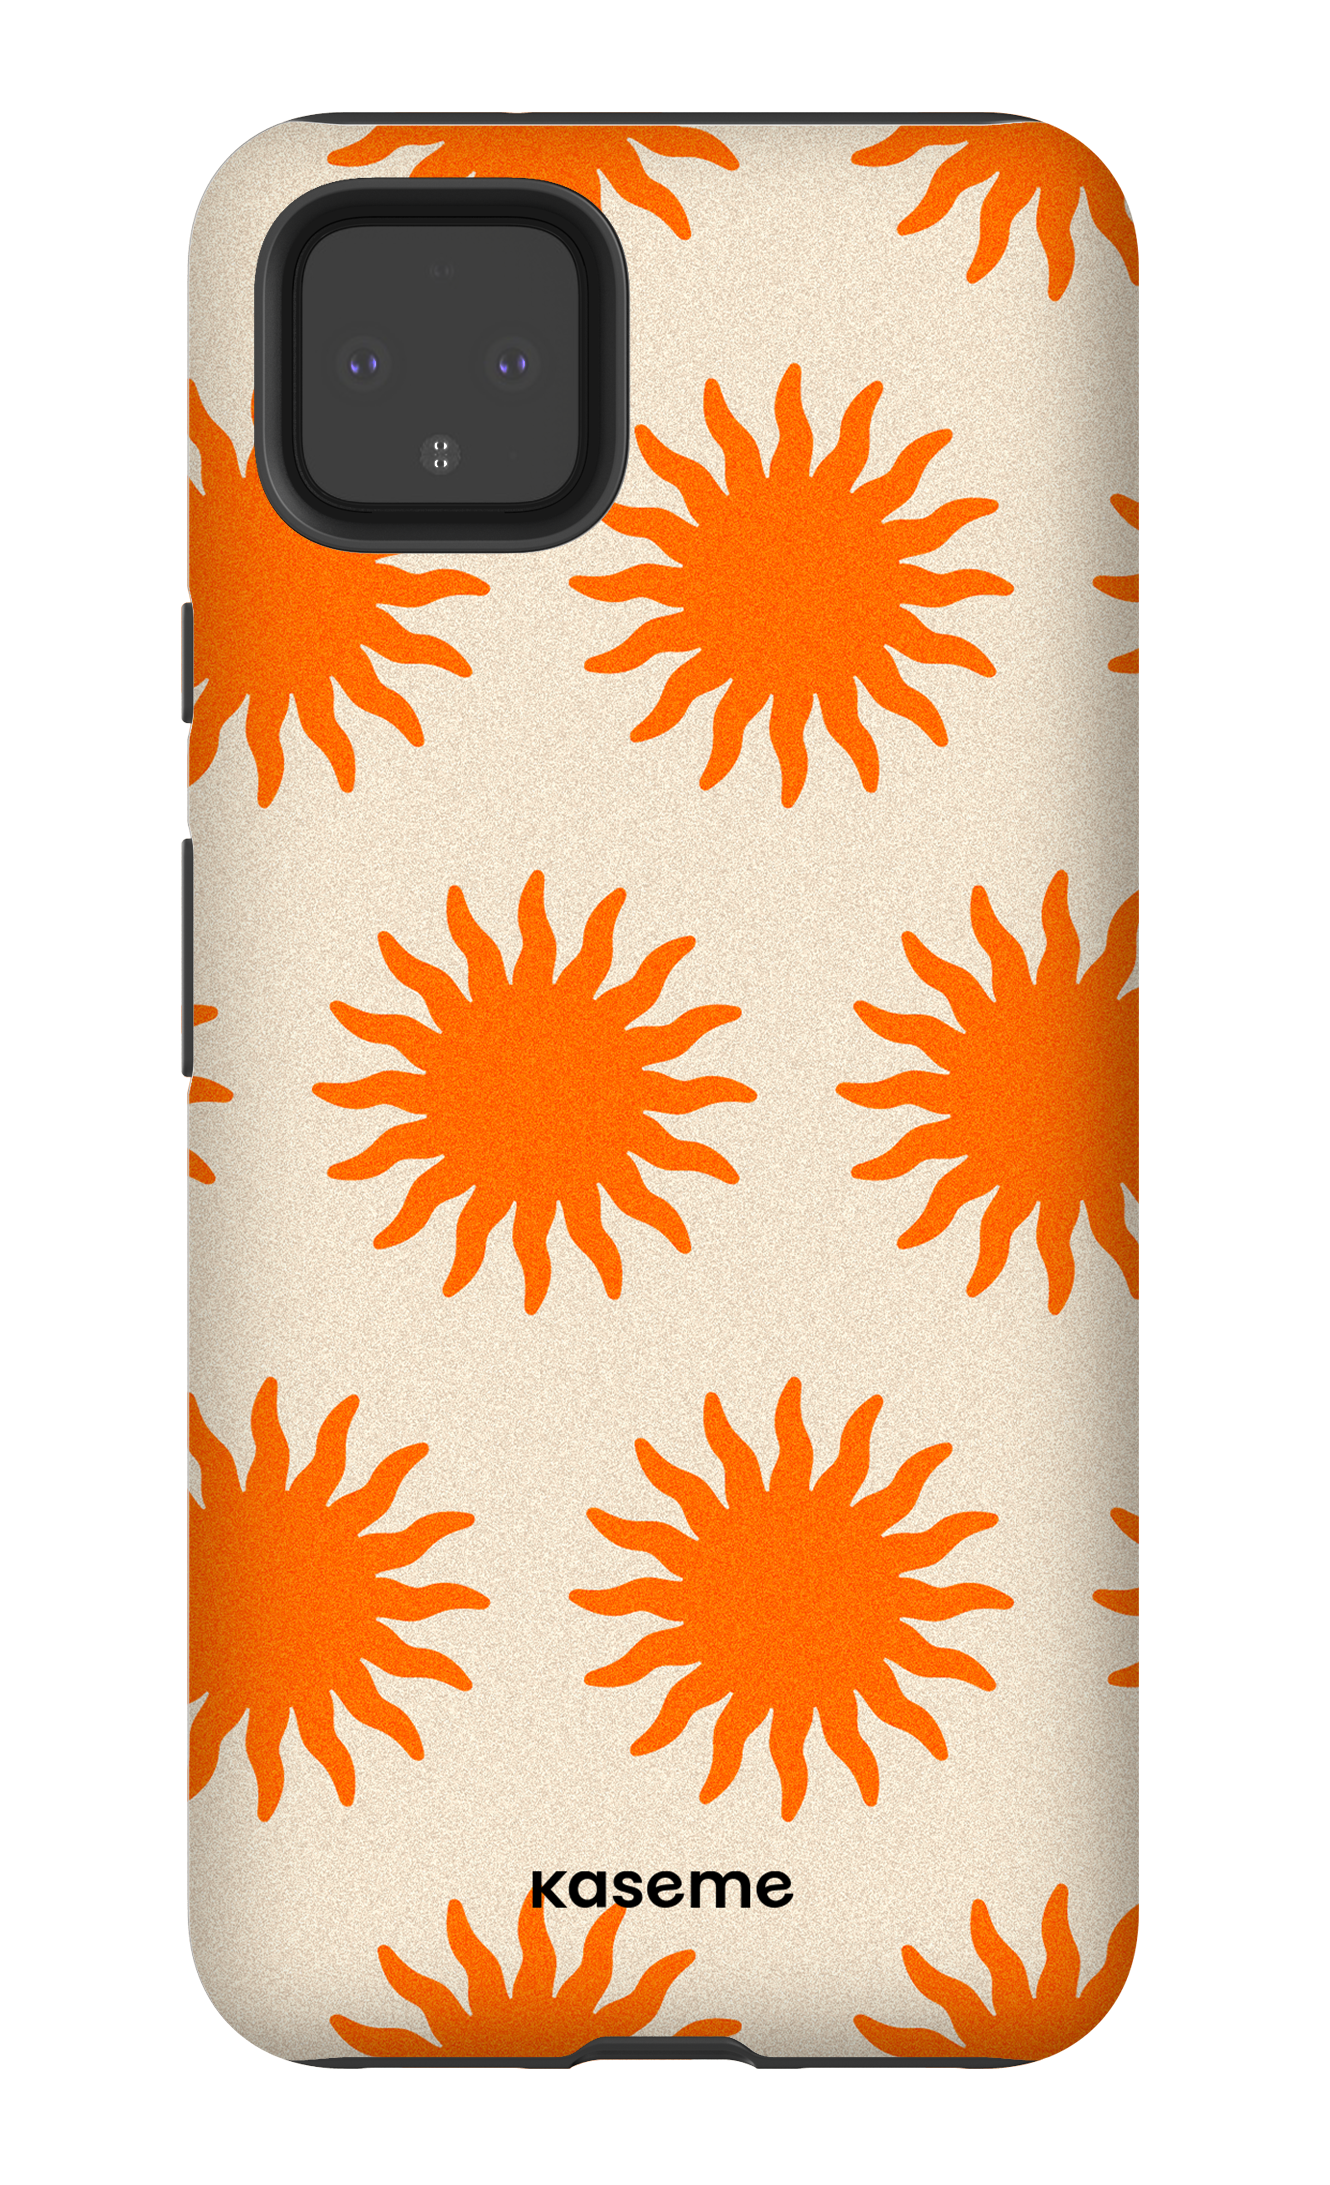 Vitamin Sea Orange - Google Pixel 4 XL